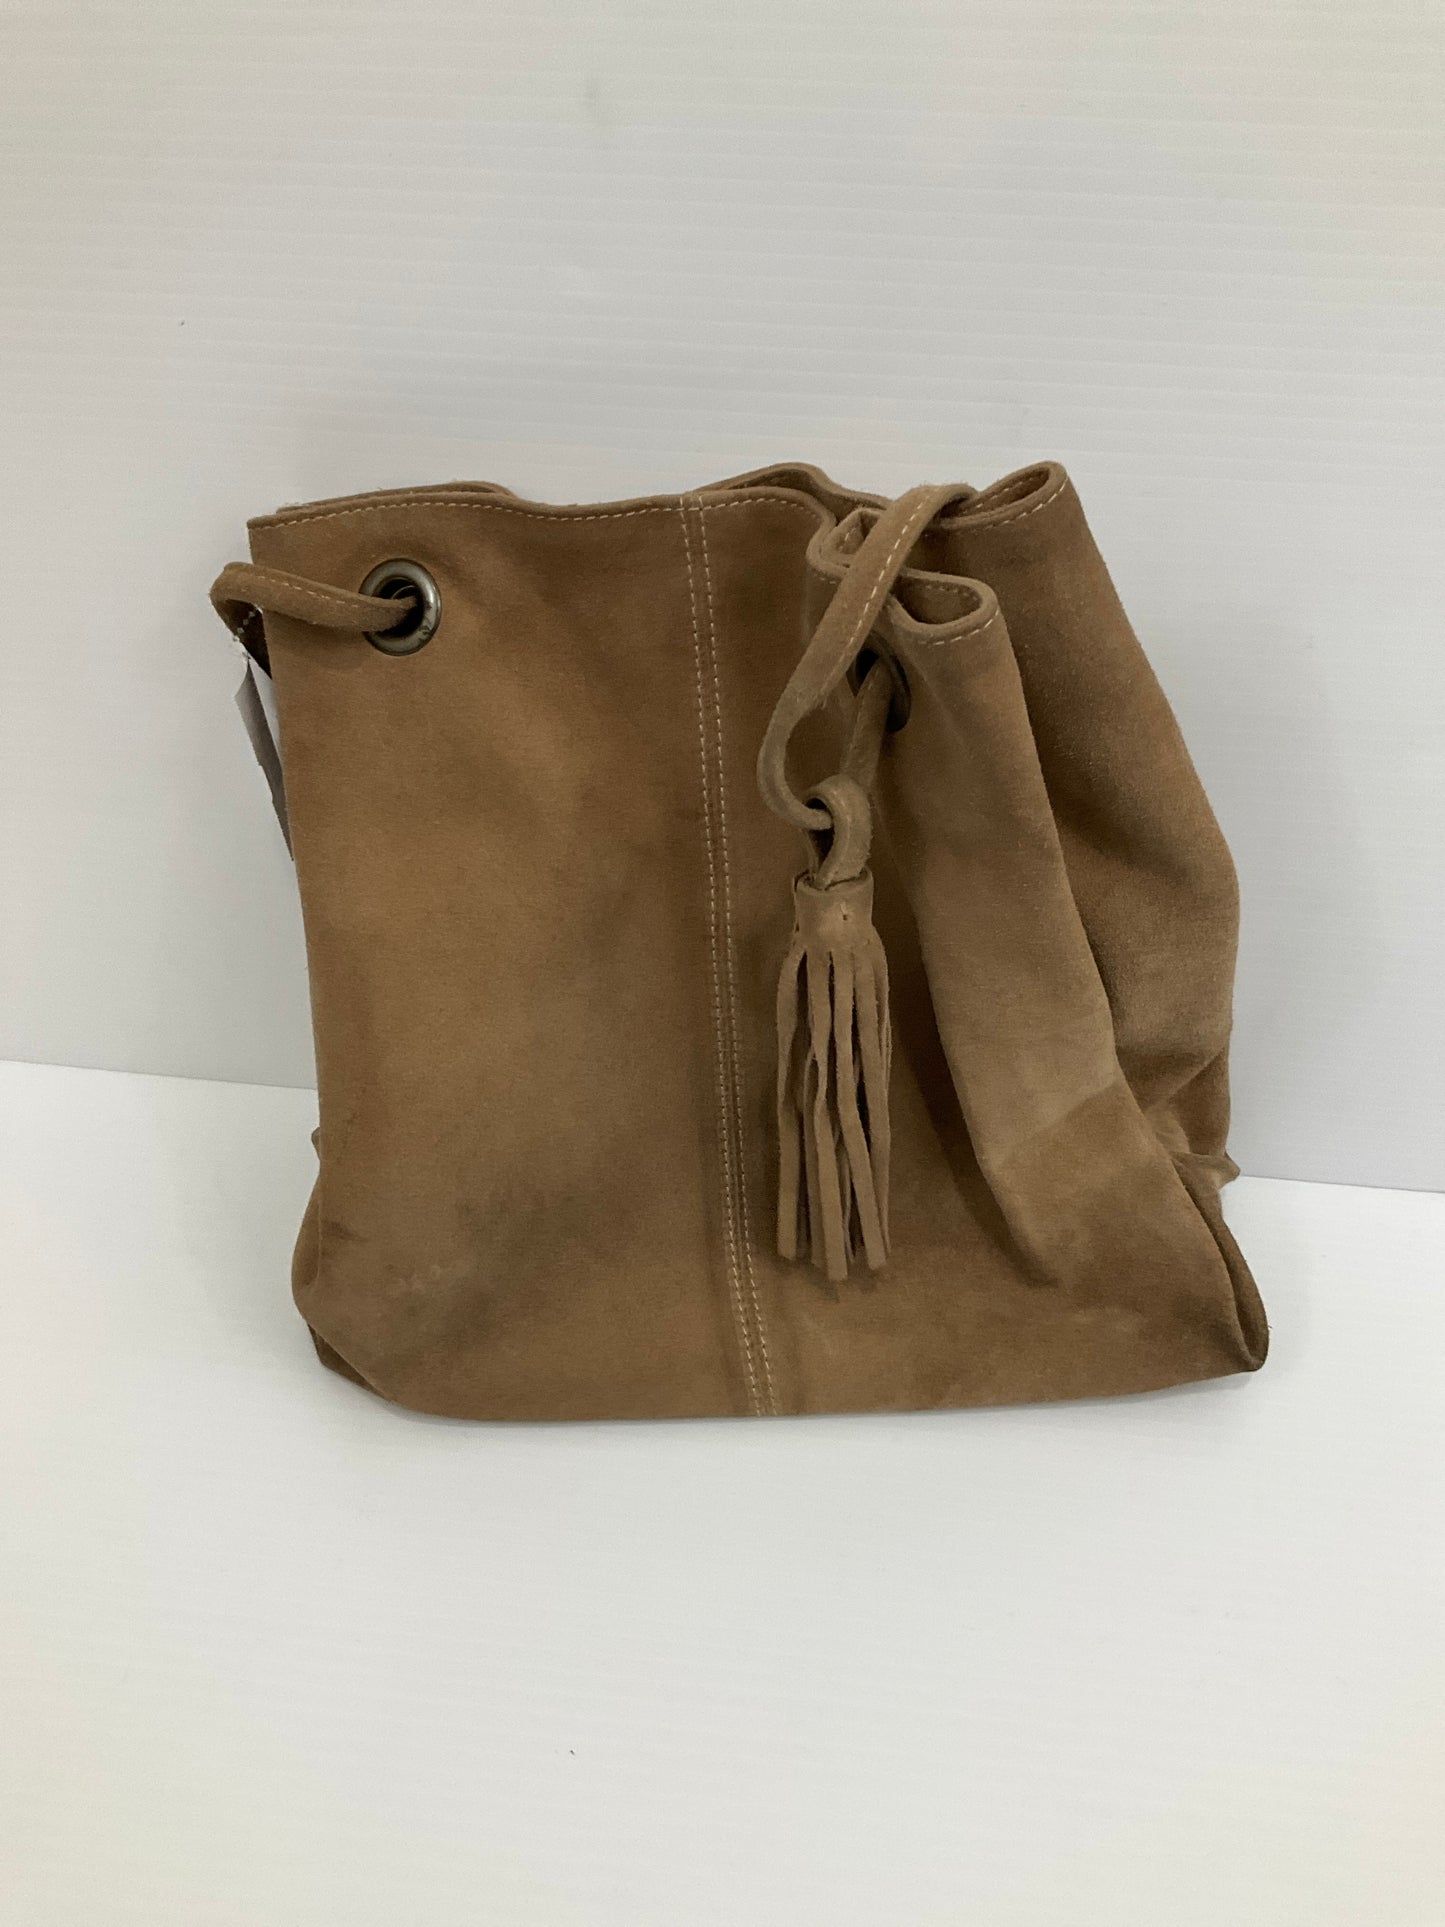 Handbag Leather By Garnet Hill  Size: Medium